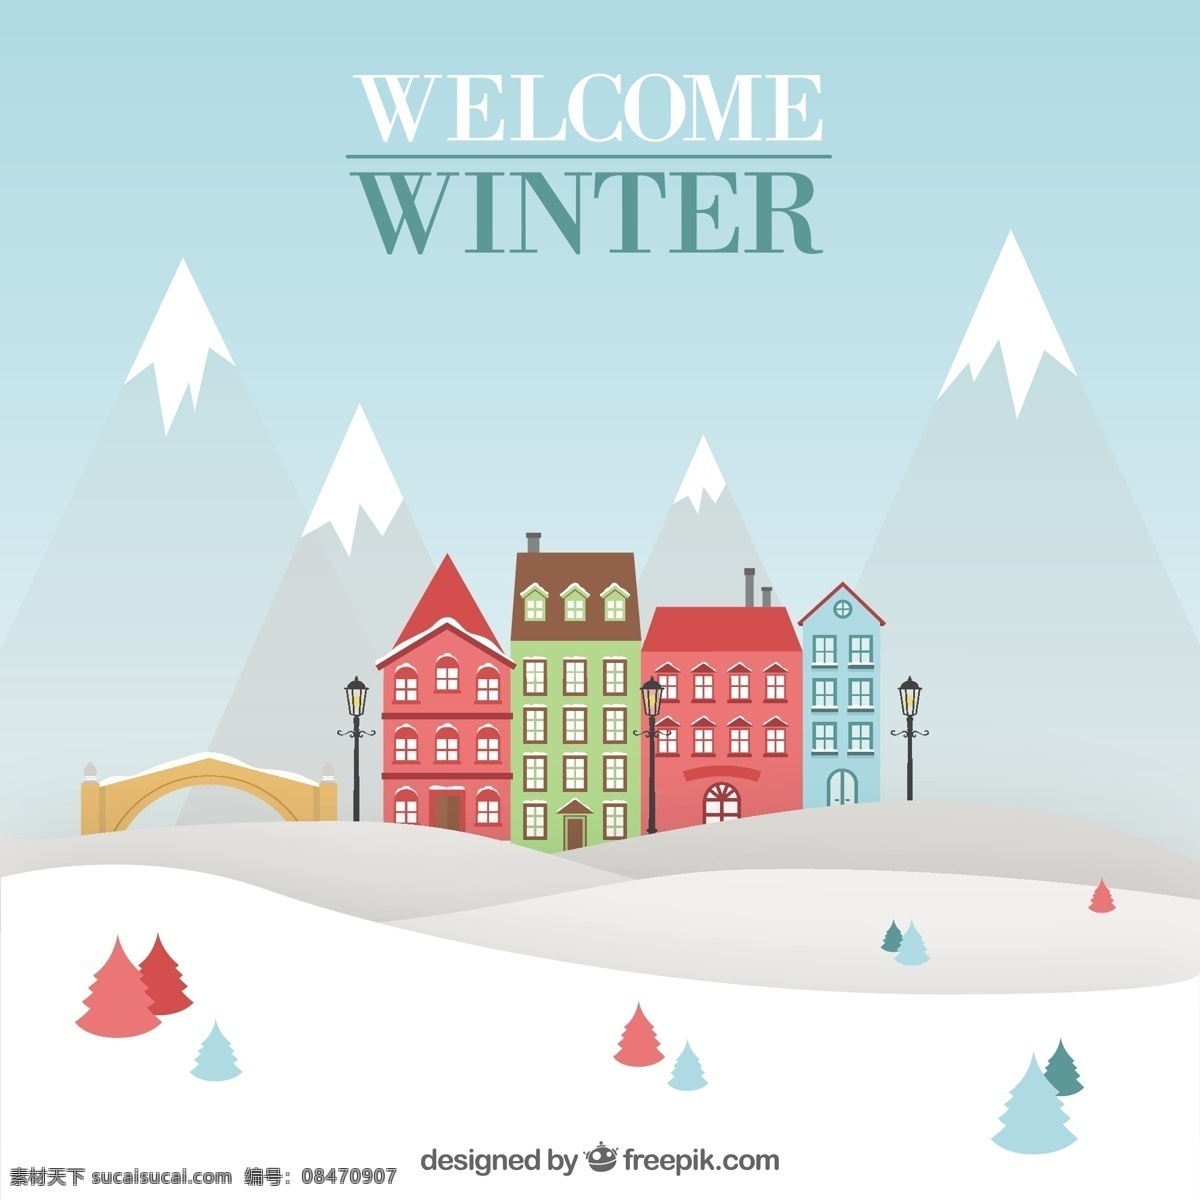 欢迎冬天 圣诞节 房子 雪 冬天 景观 节日 欢迎 村庄 房屋 十二月 下雪的季节 白色